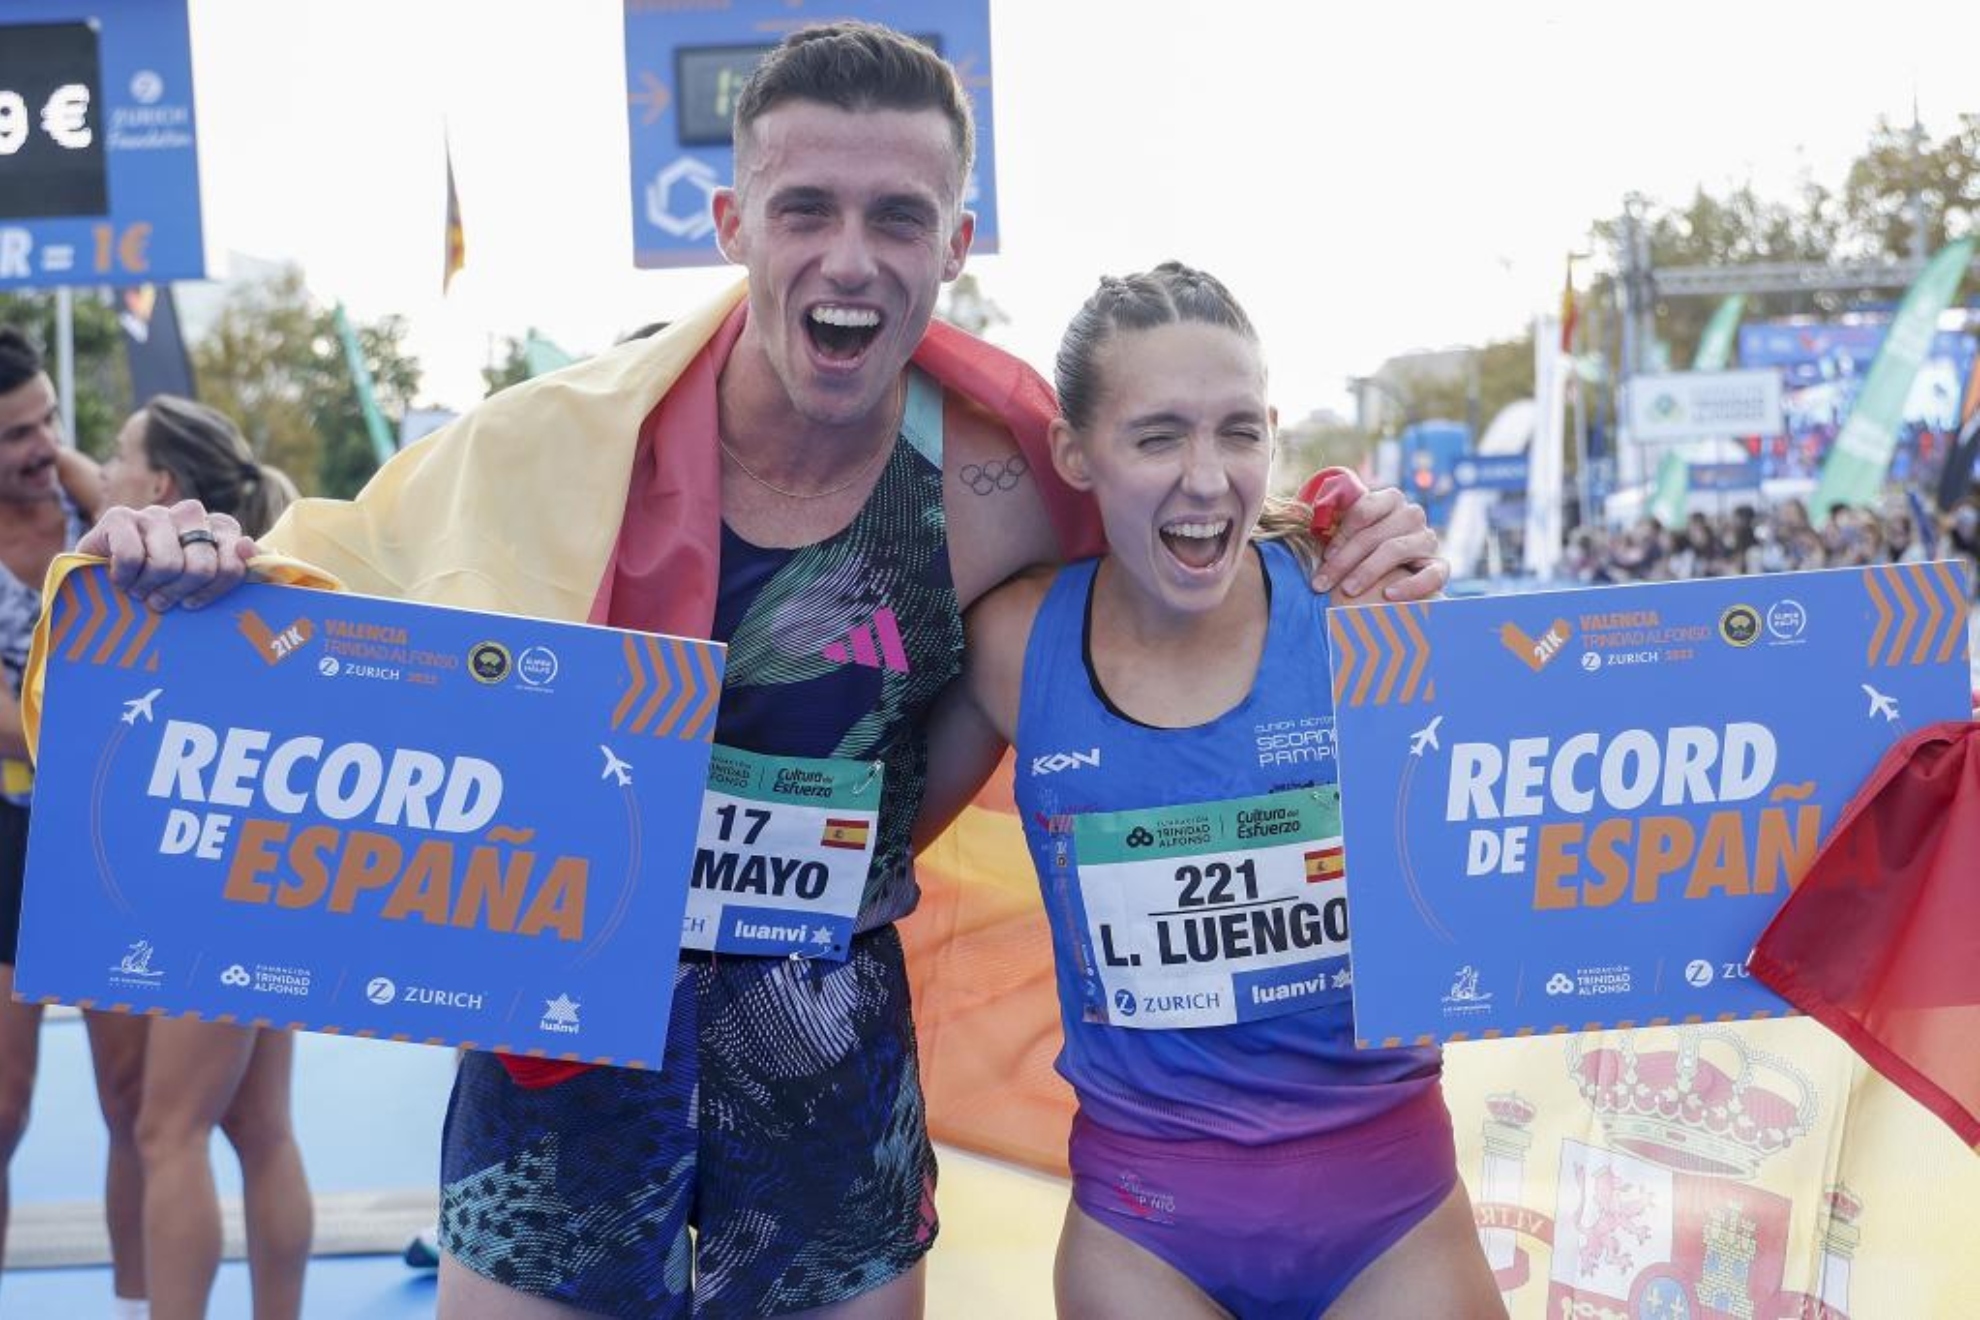 Laura Luengo, junto a Carlos Mayo, tras batir el récord de España de medio maratón